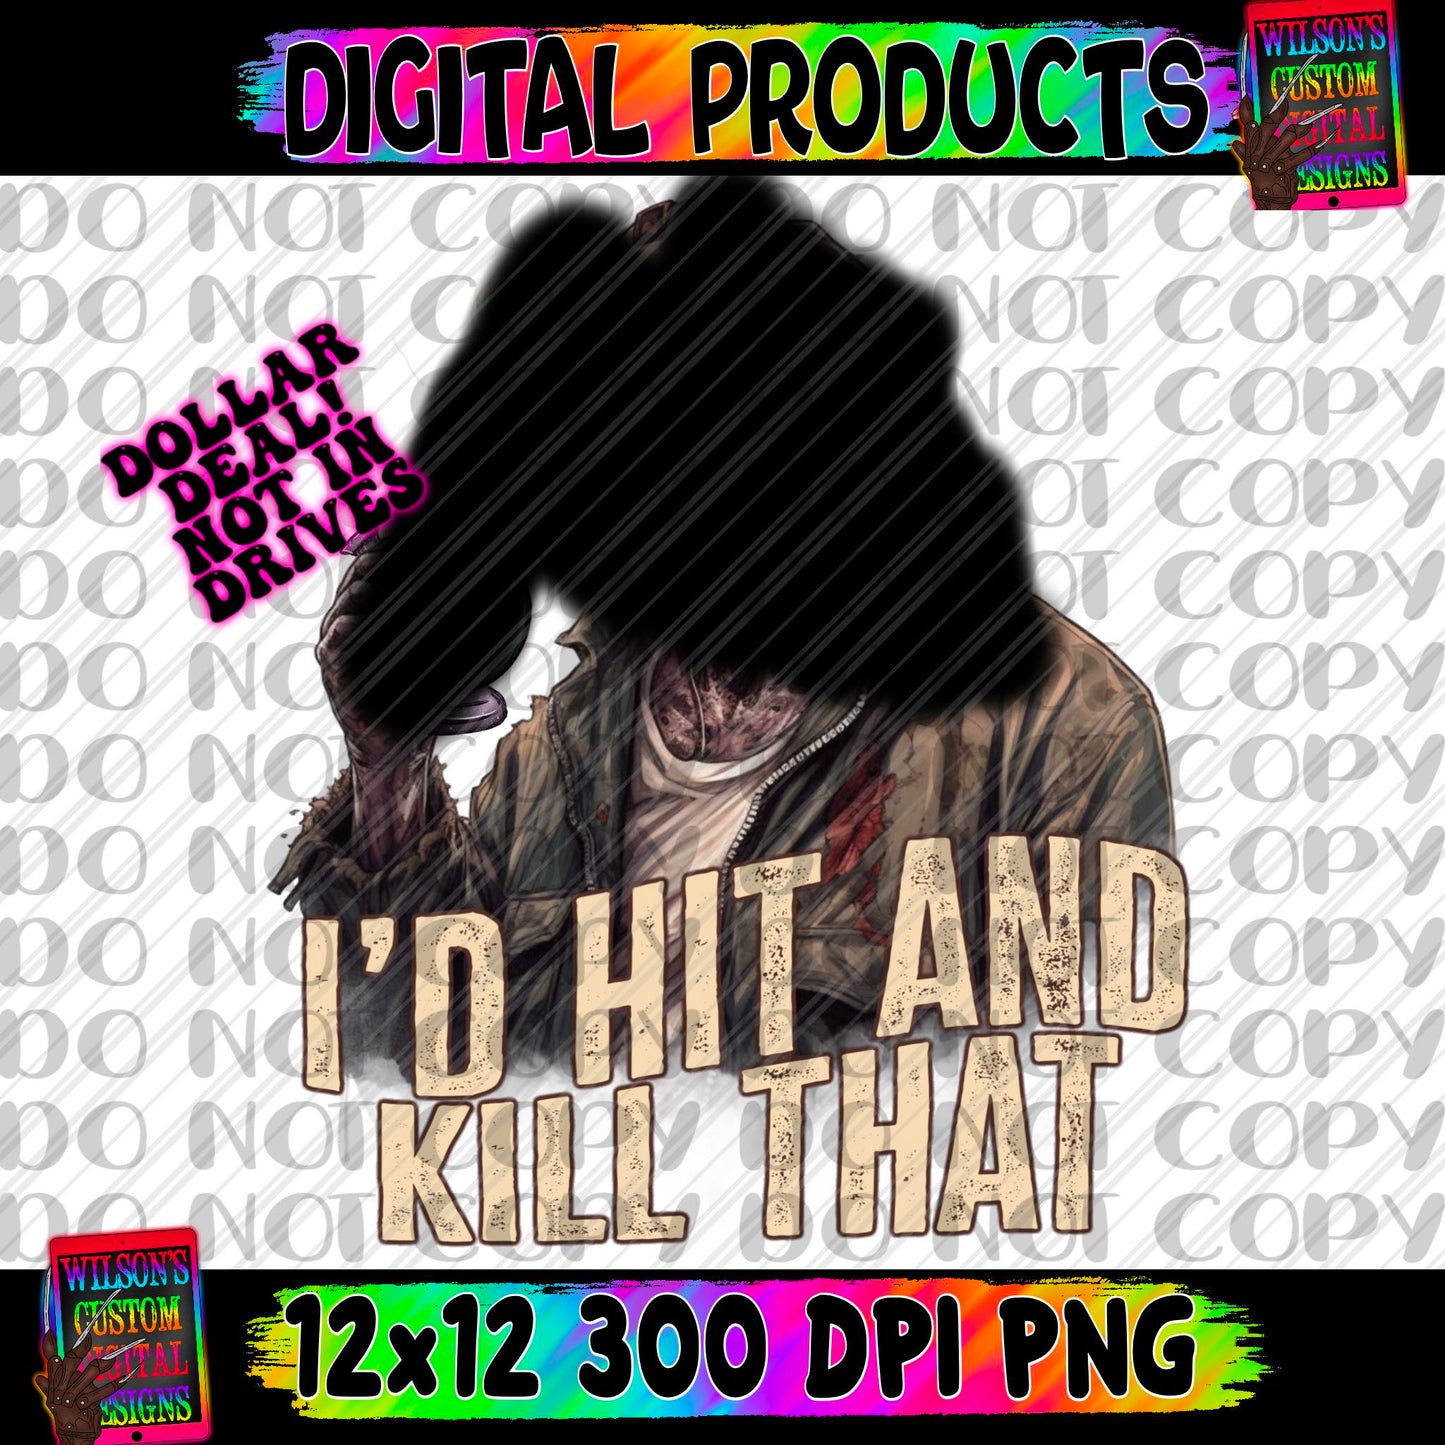 I’d hit & kill that